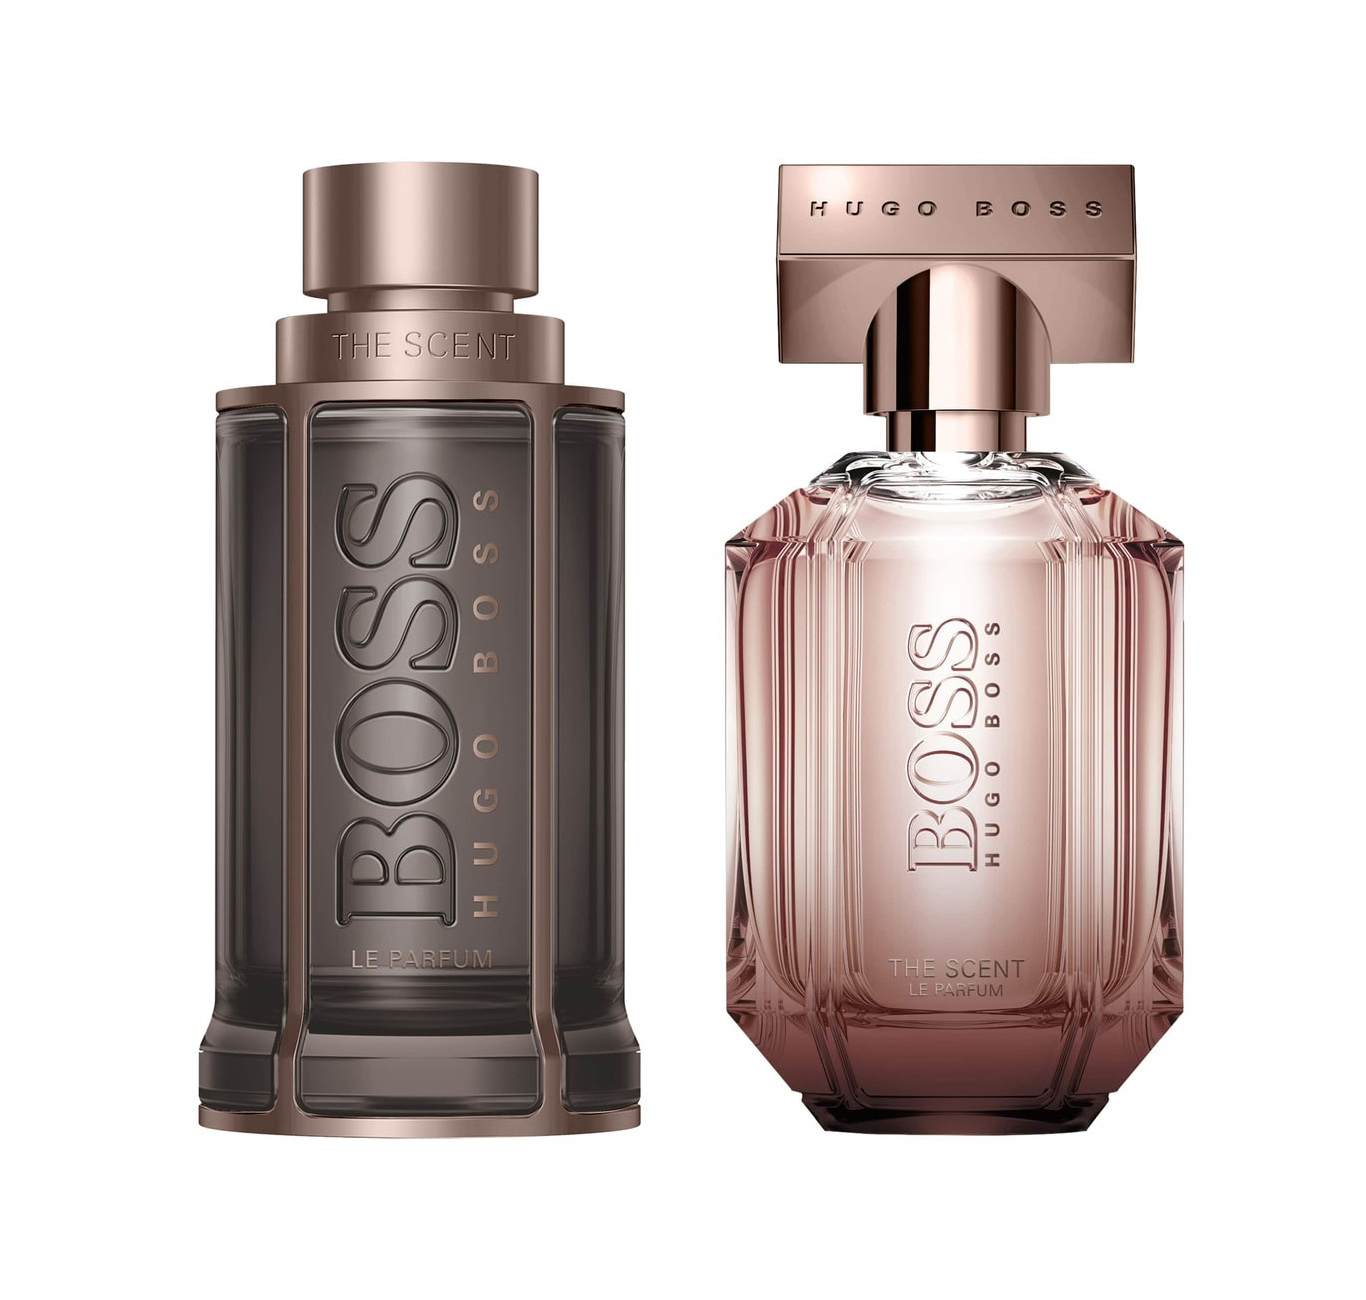 Ontaarden Intimidatie aansluiten HUGO BOSS: Boss The Scent Le Parfum For Him and Boss The Scent Le Parfum  For Her ~ New Fragrances